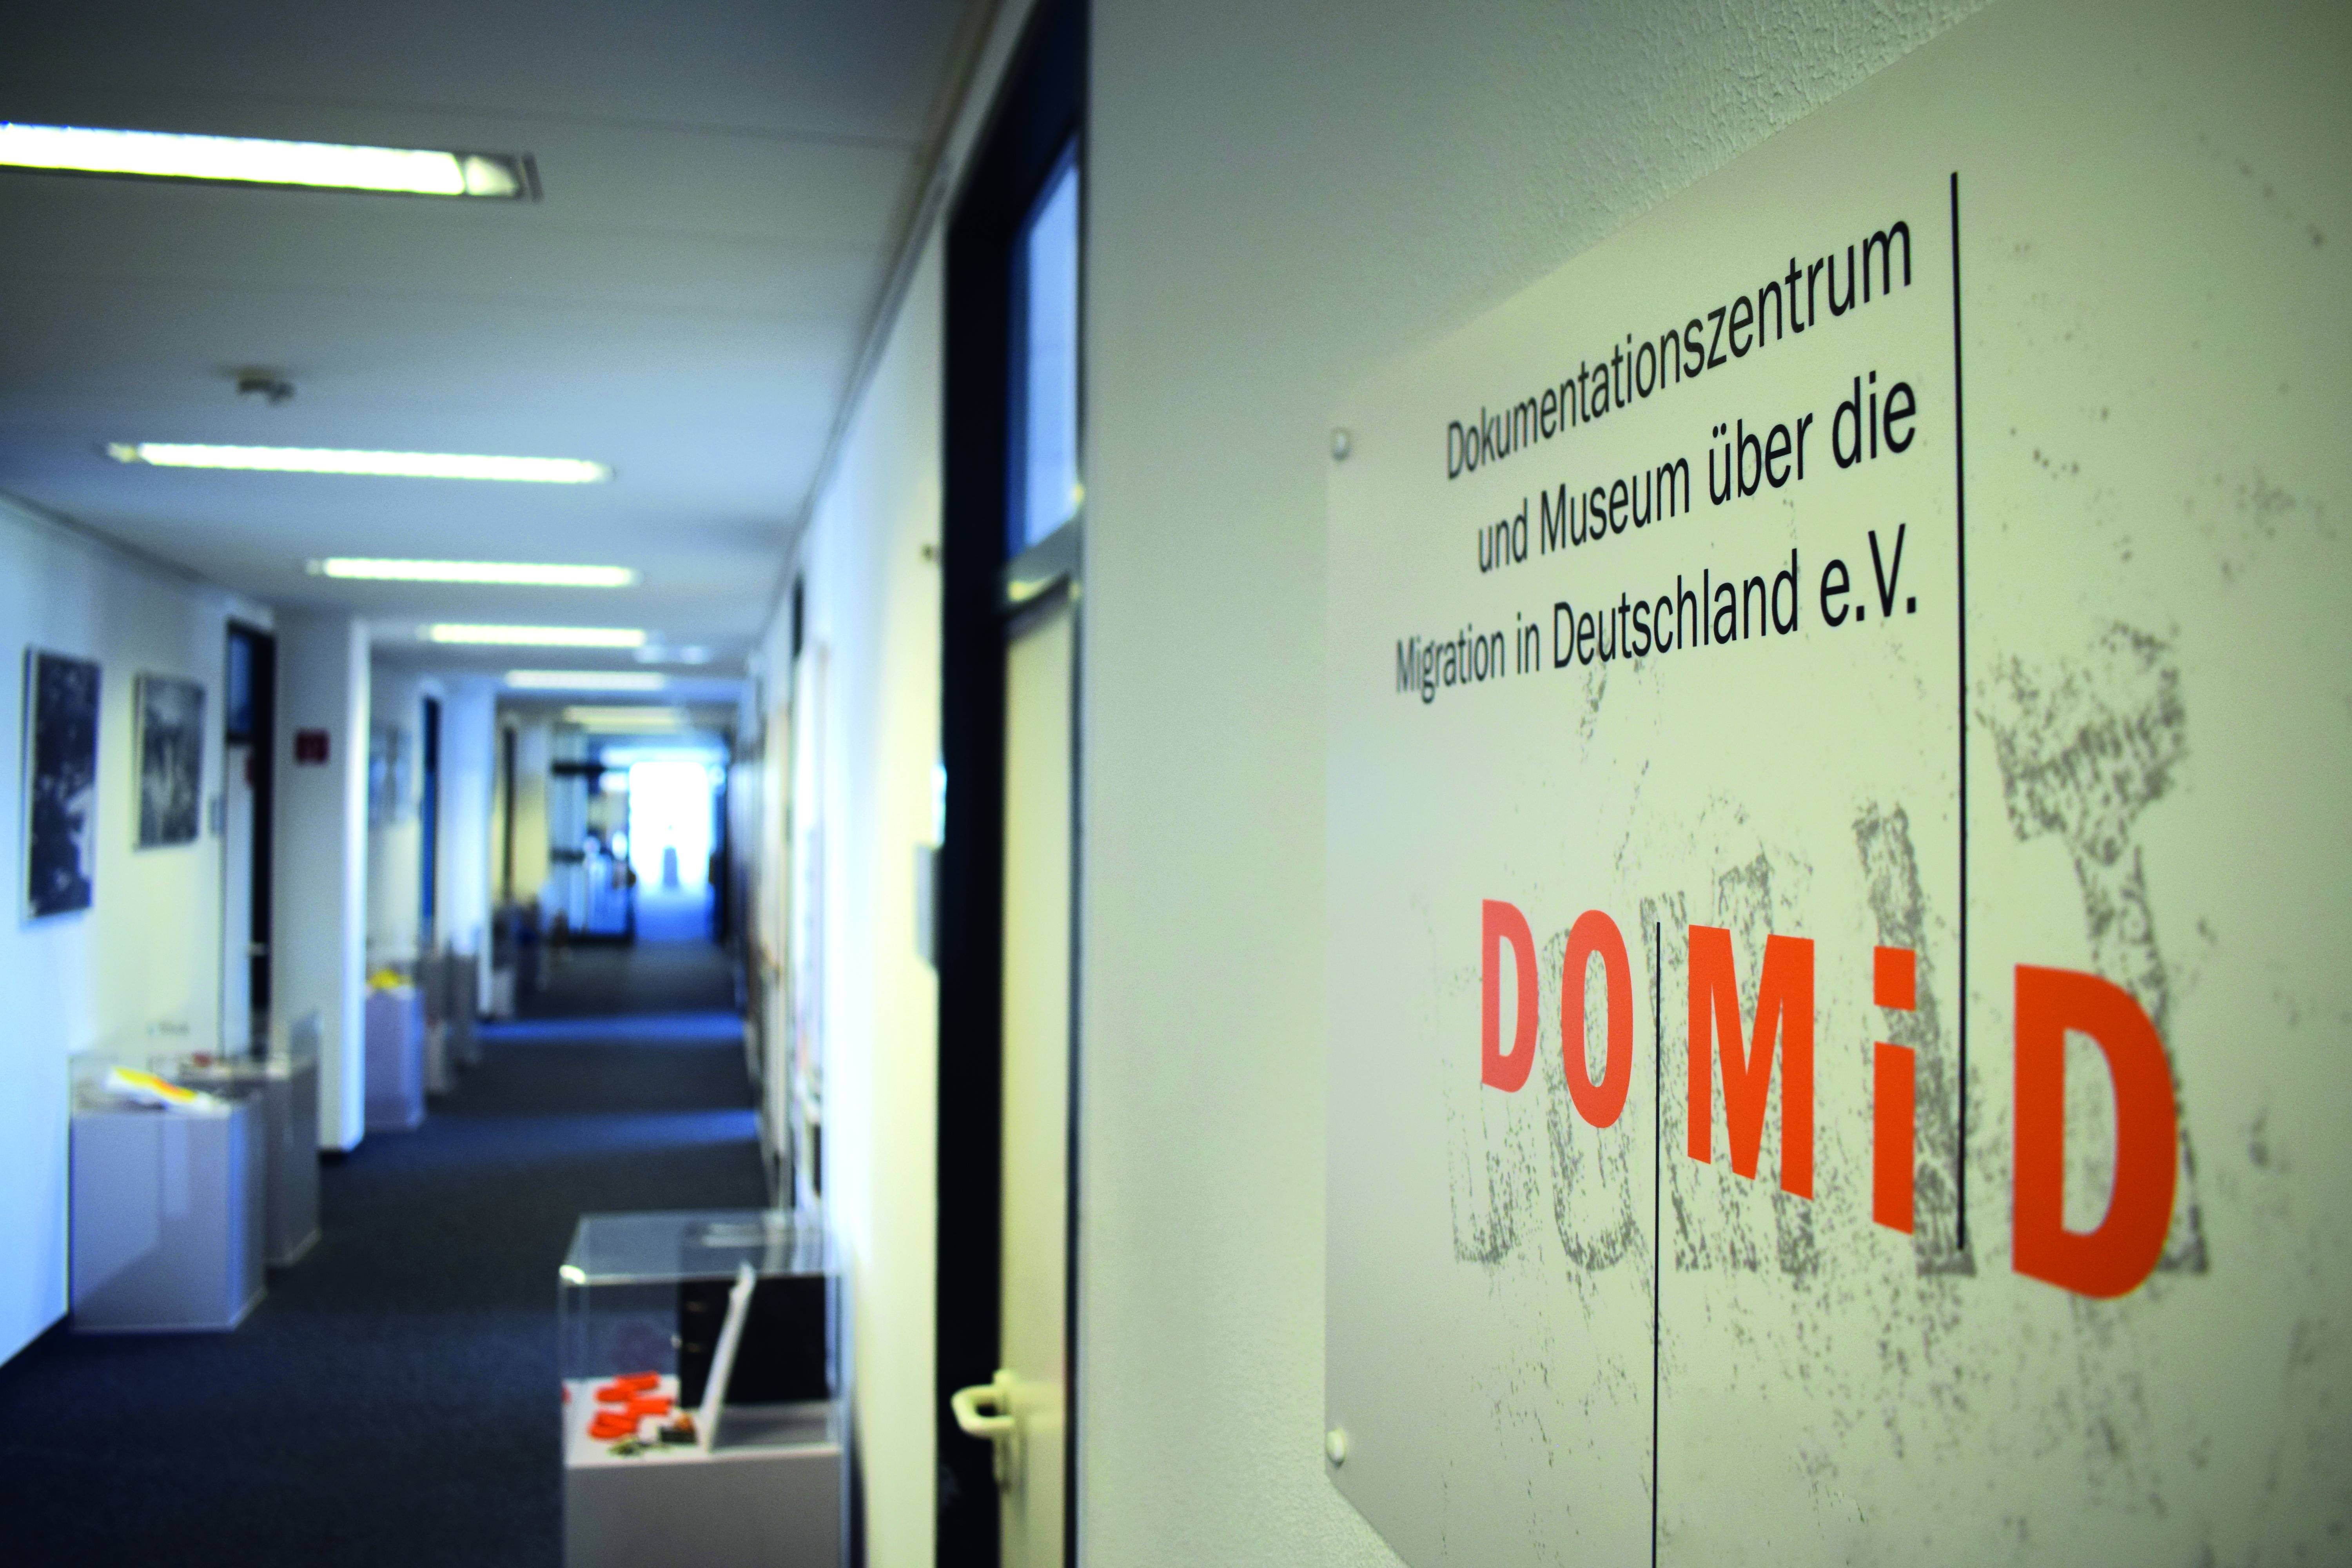 Die Geschäftsstelle von DOMiD im Bezirksrathaus in Köln-Ehrenfeld. Seit 2009 sind hier Büros, Depots und Magazine des gemeinnützigen Vereins untergebracht. Foto: DOMiD-Archiv, Köln